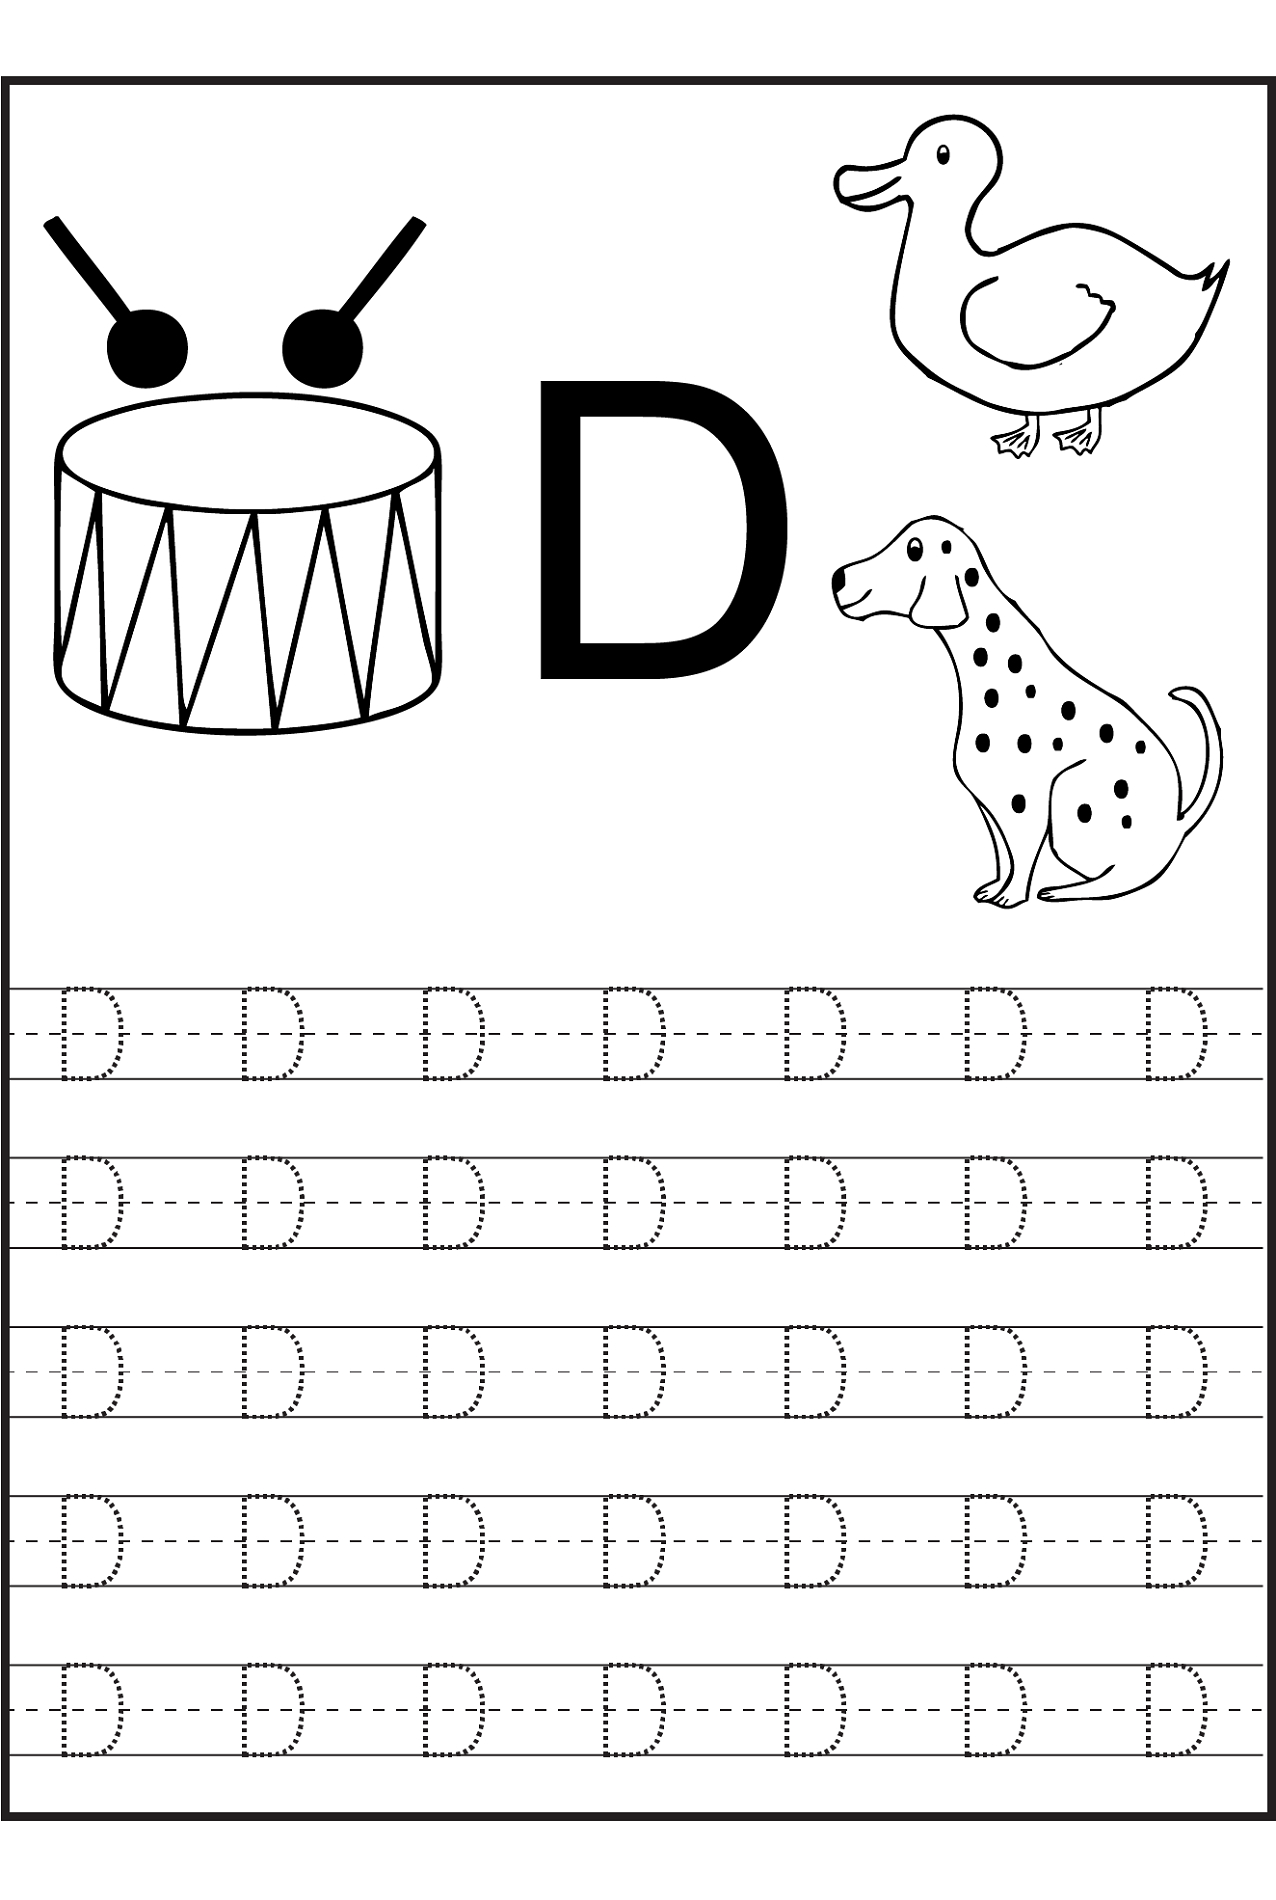 Alphabet Worksheet Sparklebox | Printable Worksheets And within Letter N Worksheets Sparklebox